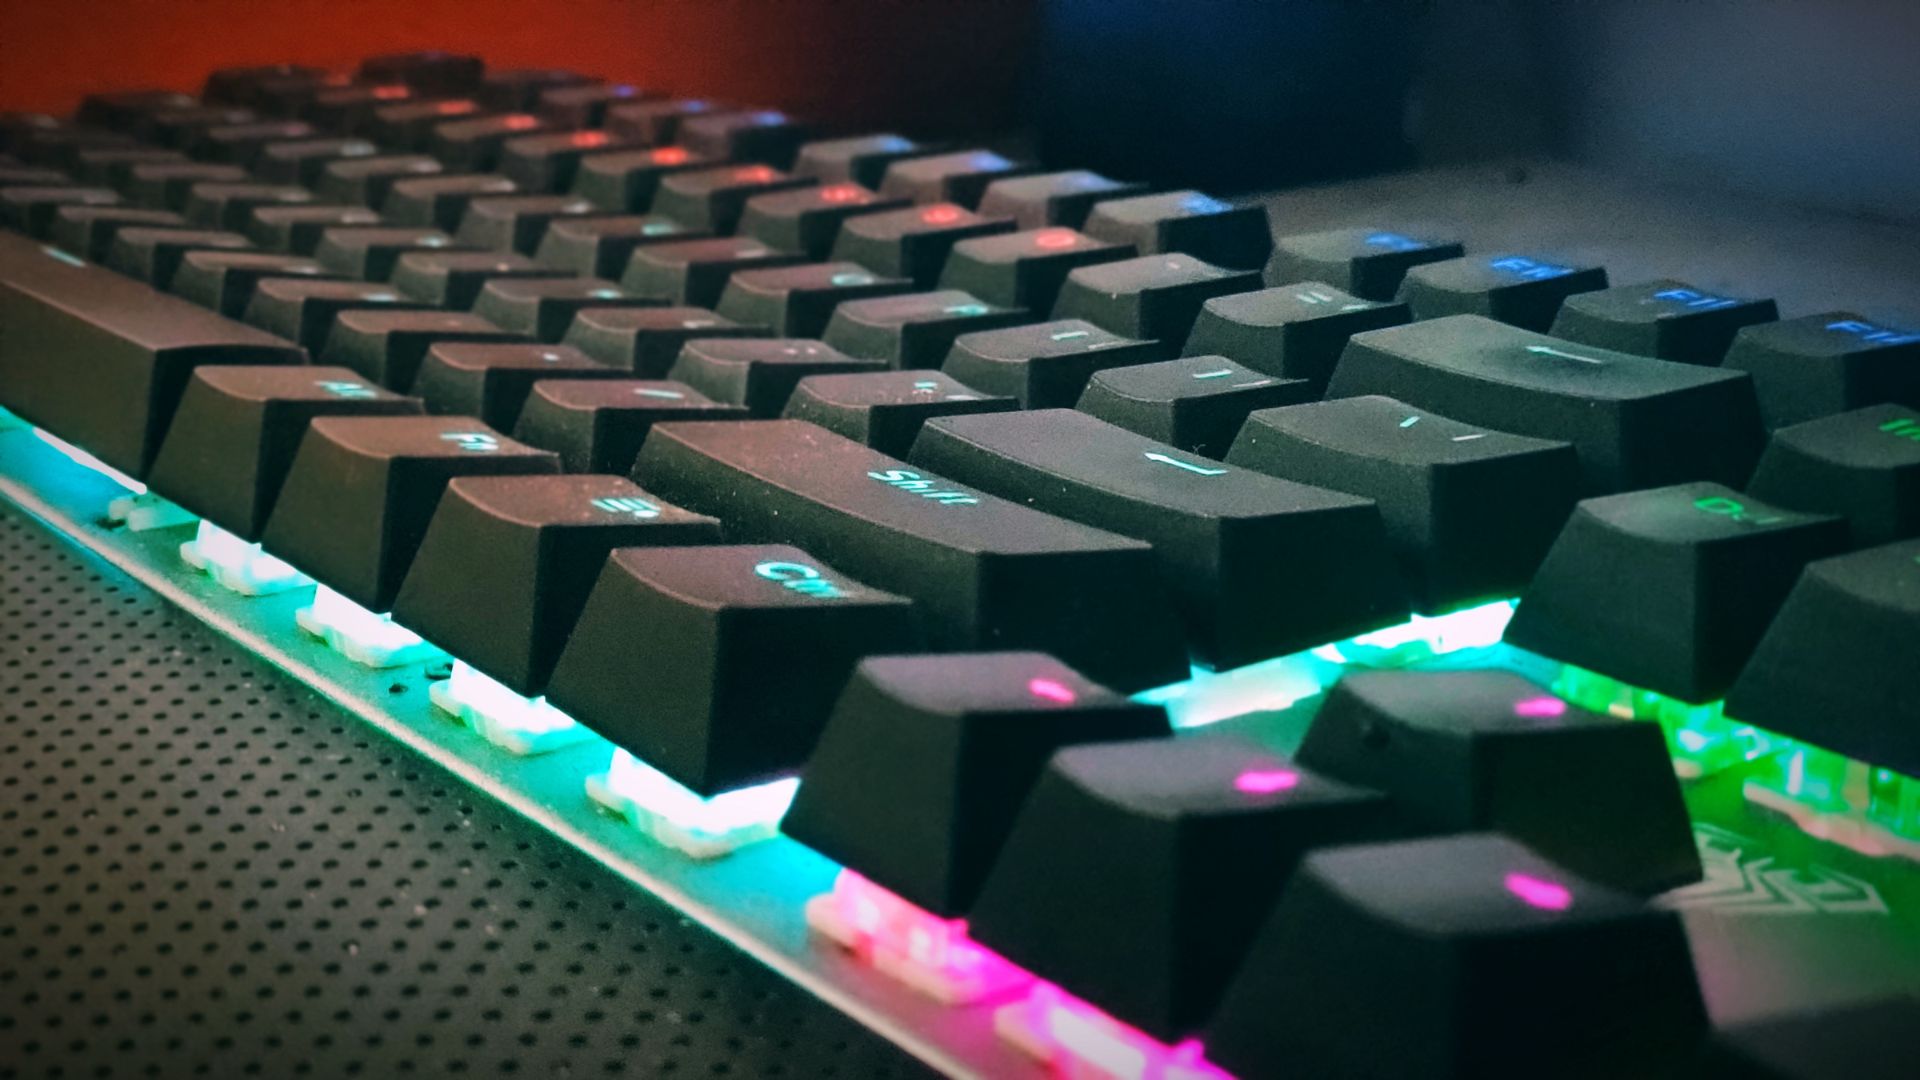 Keyboard Caps